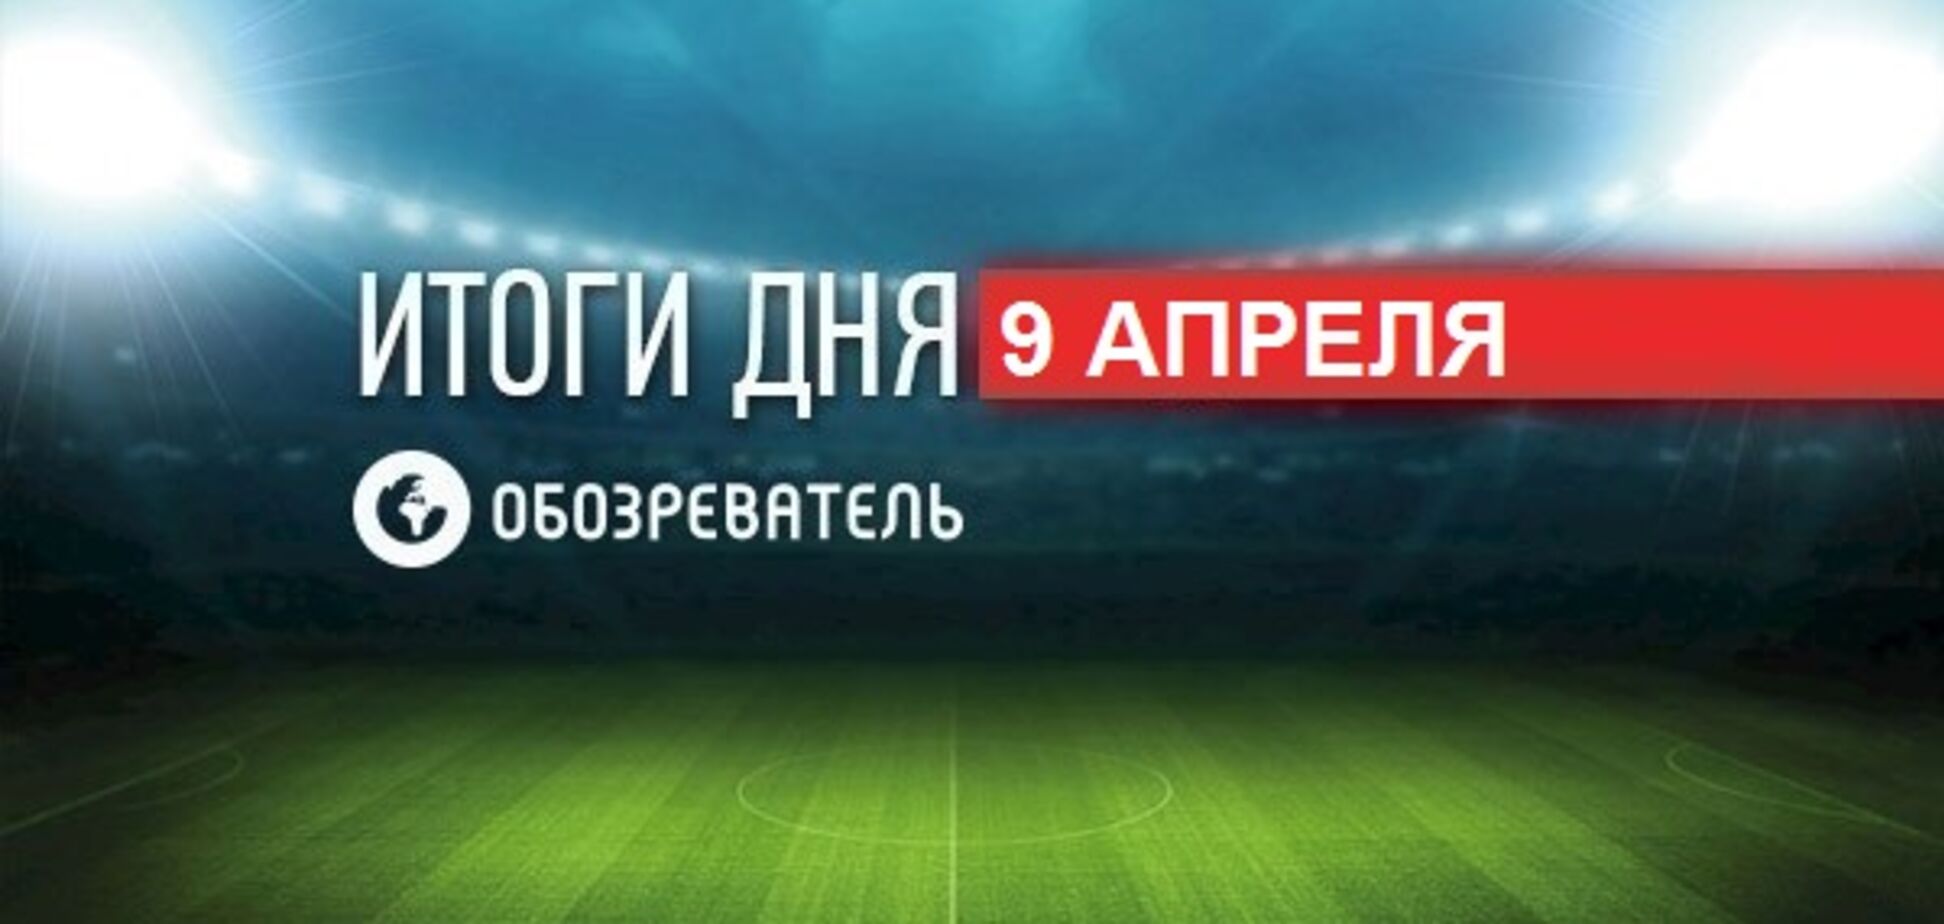 Легенда сборной России оцепенел после матча с Украиной: спортивные итоги 9 апреля